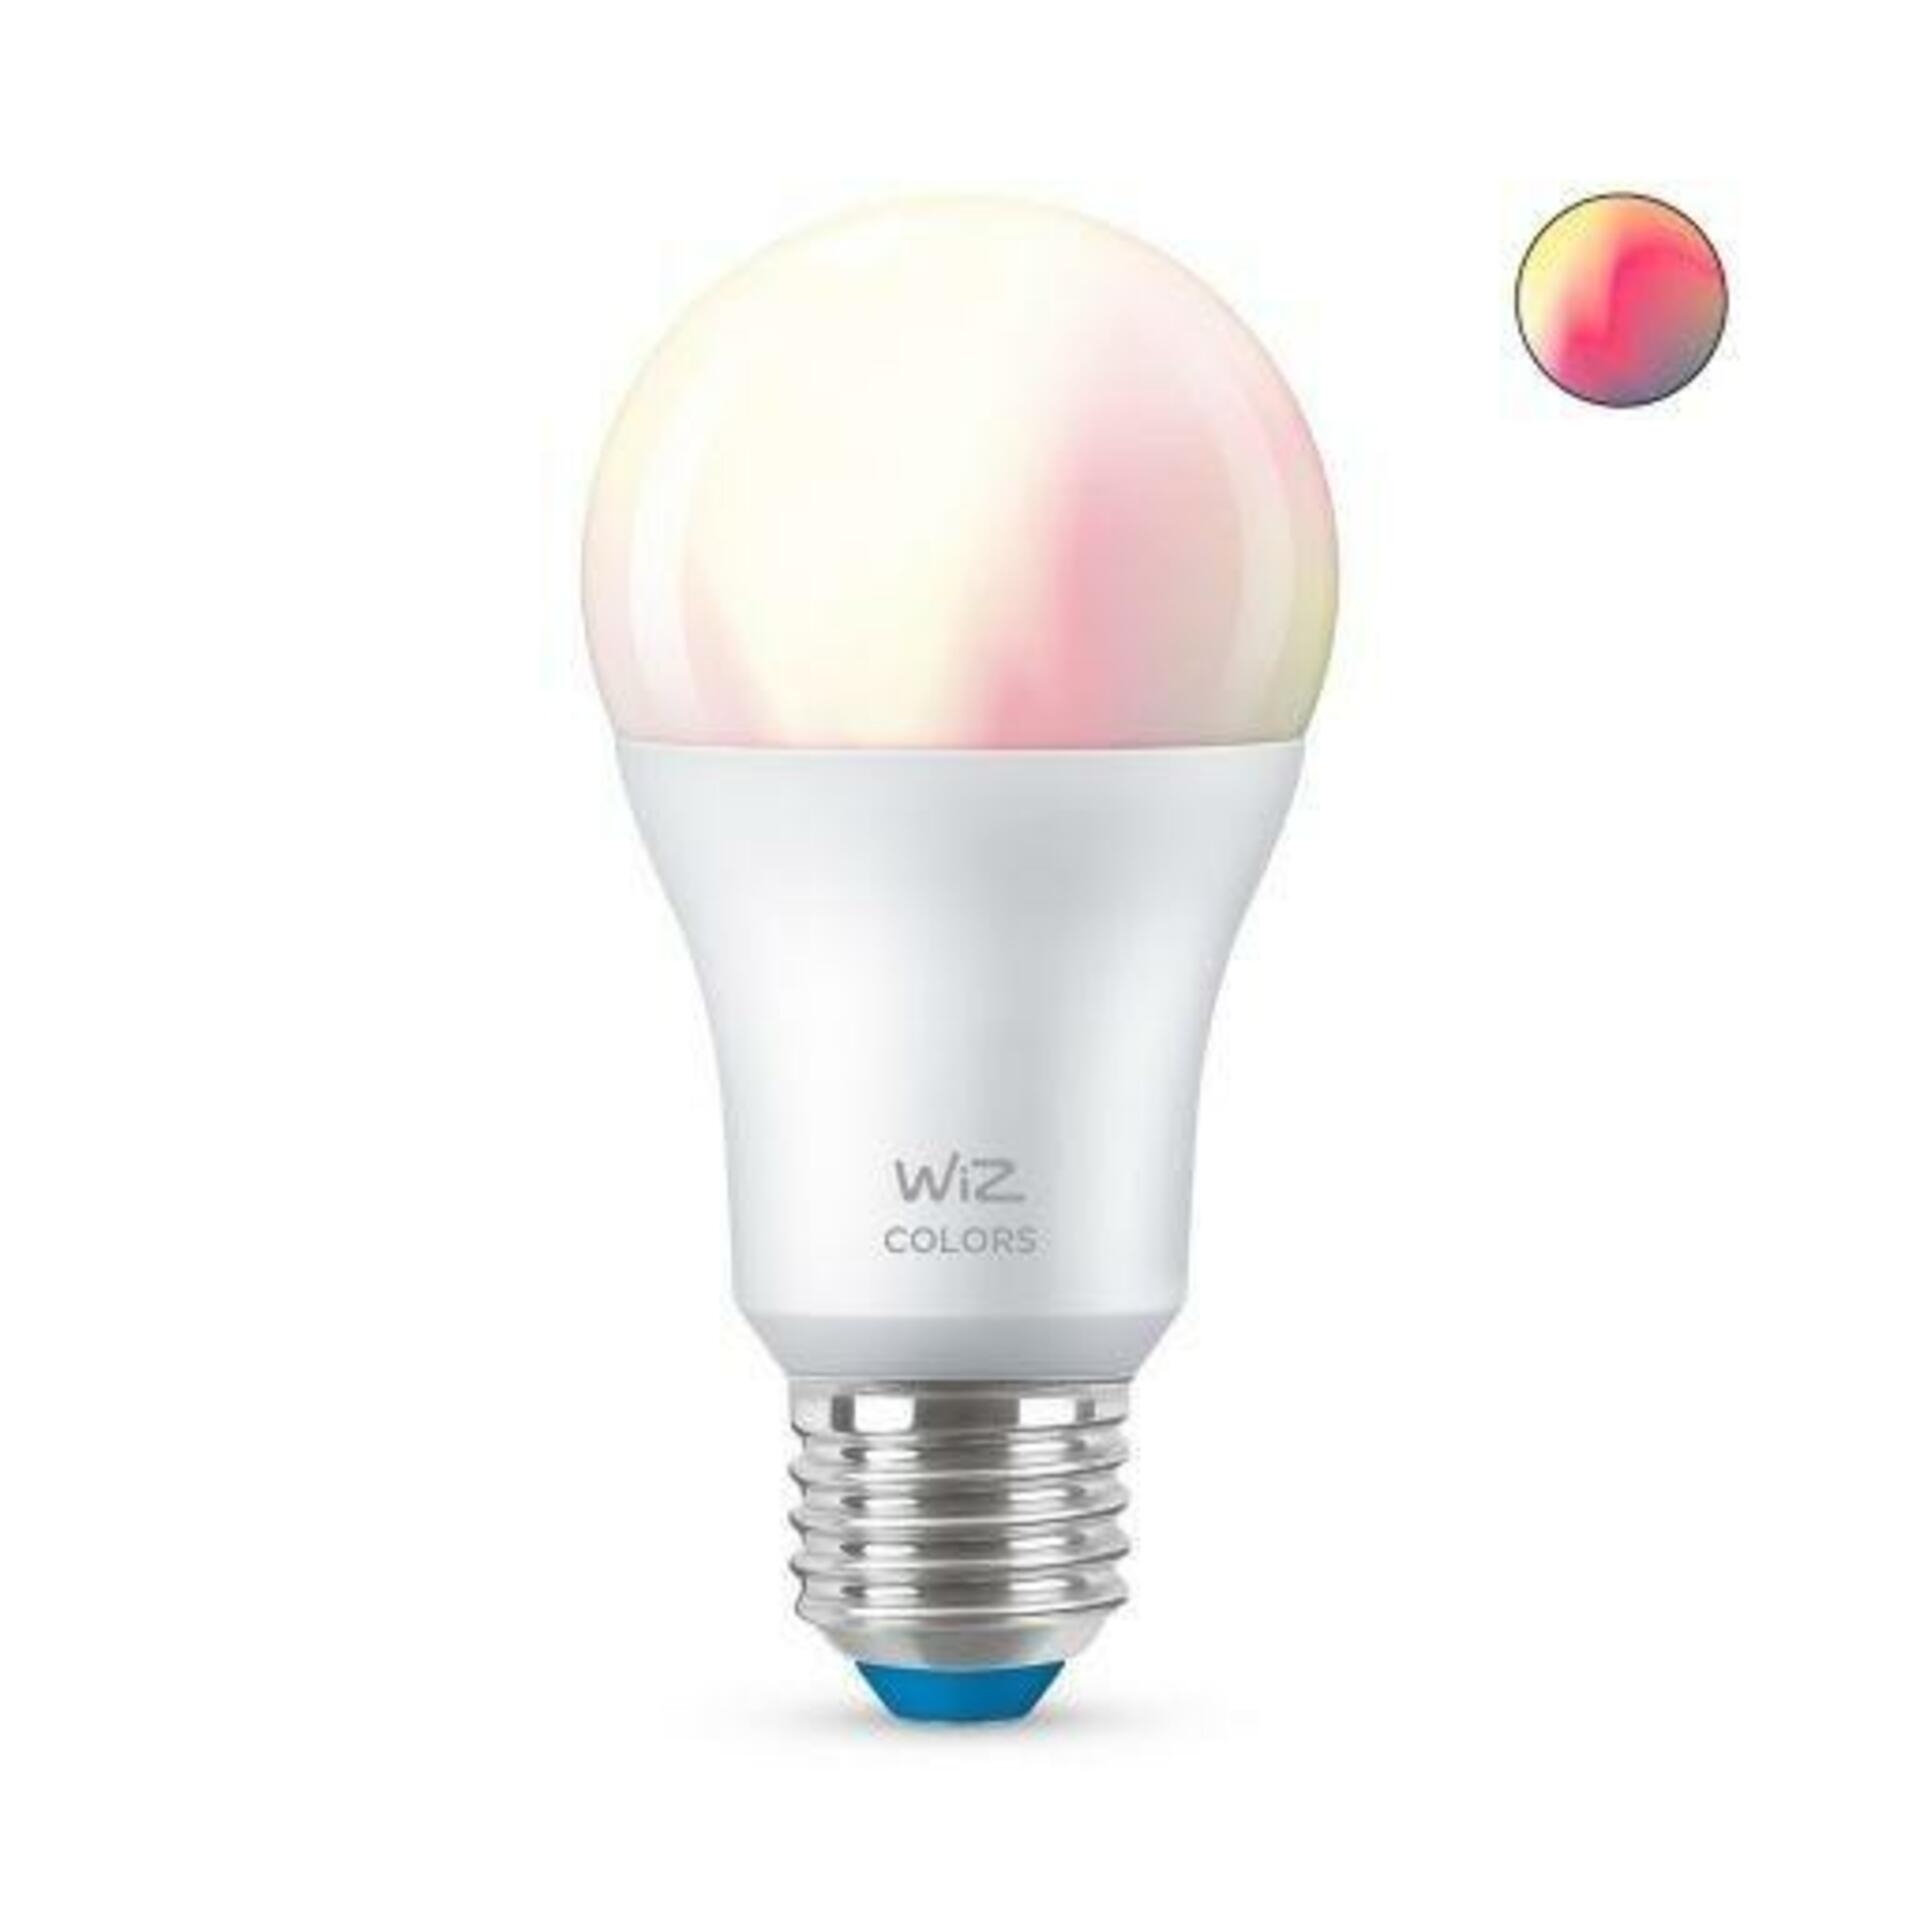 Levně LED Žárovka WiZ Colors 8718699787059 E27 A60 8-60W 806lm 2200-6500K, RGB 16 mil. barev, stmívatelná